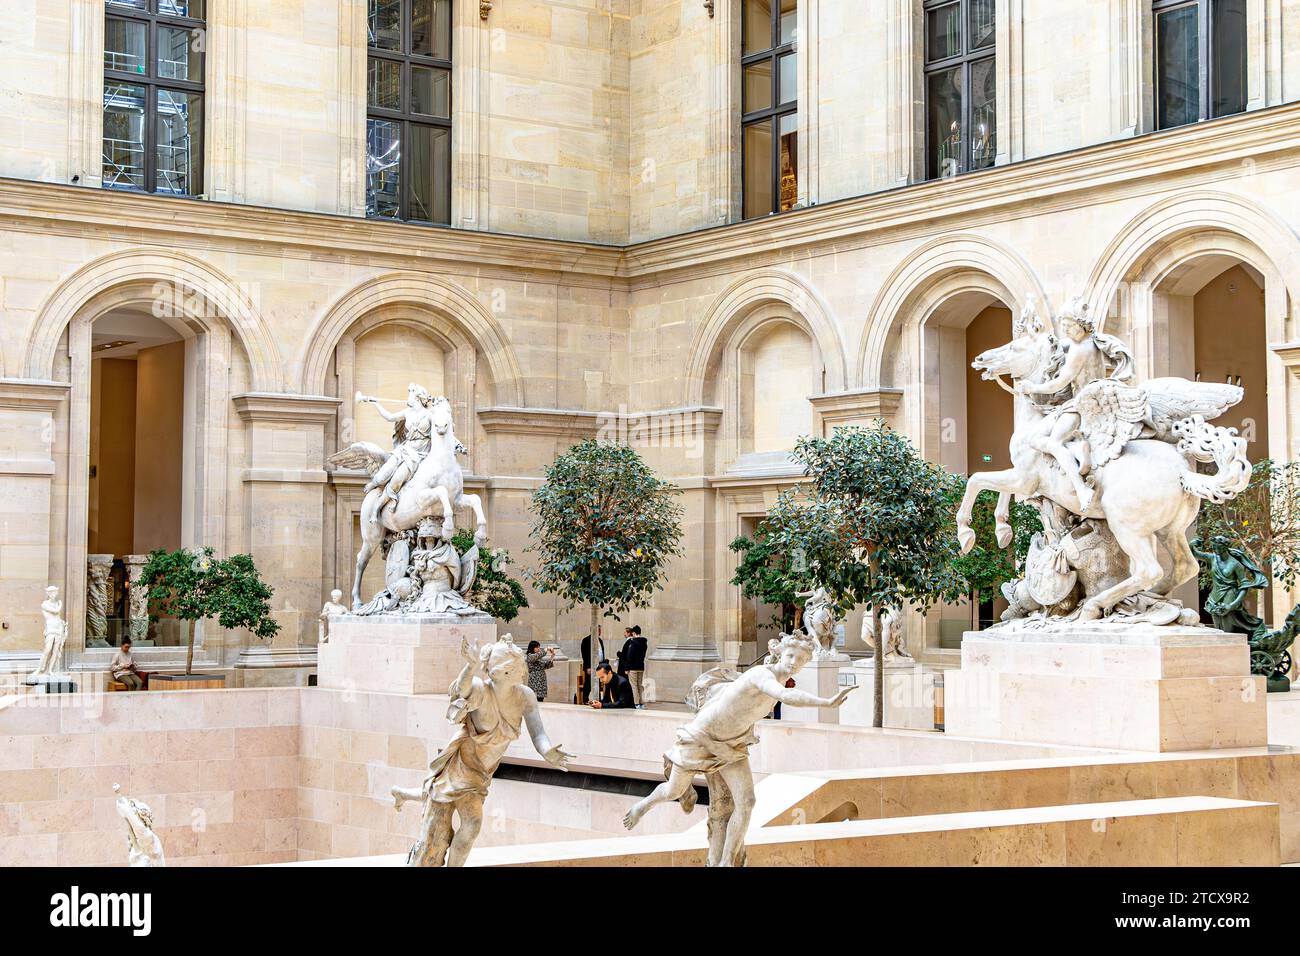 Sculptures dans la cour verrière connue sous le nom de Cour Marly dans l'aile Richelieu du musée du Louvre, Paris, Fance Banque D'Images